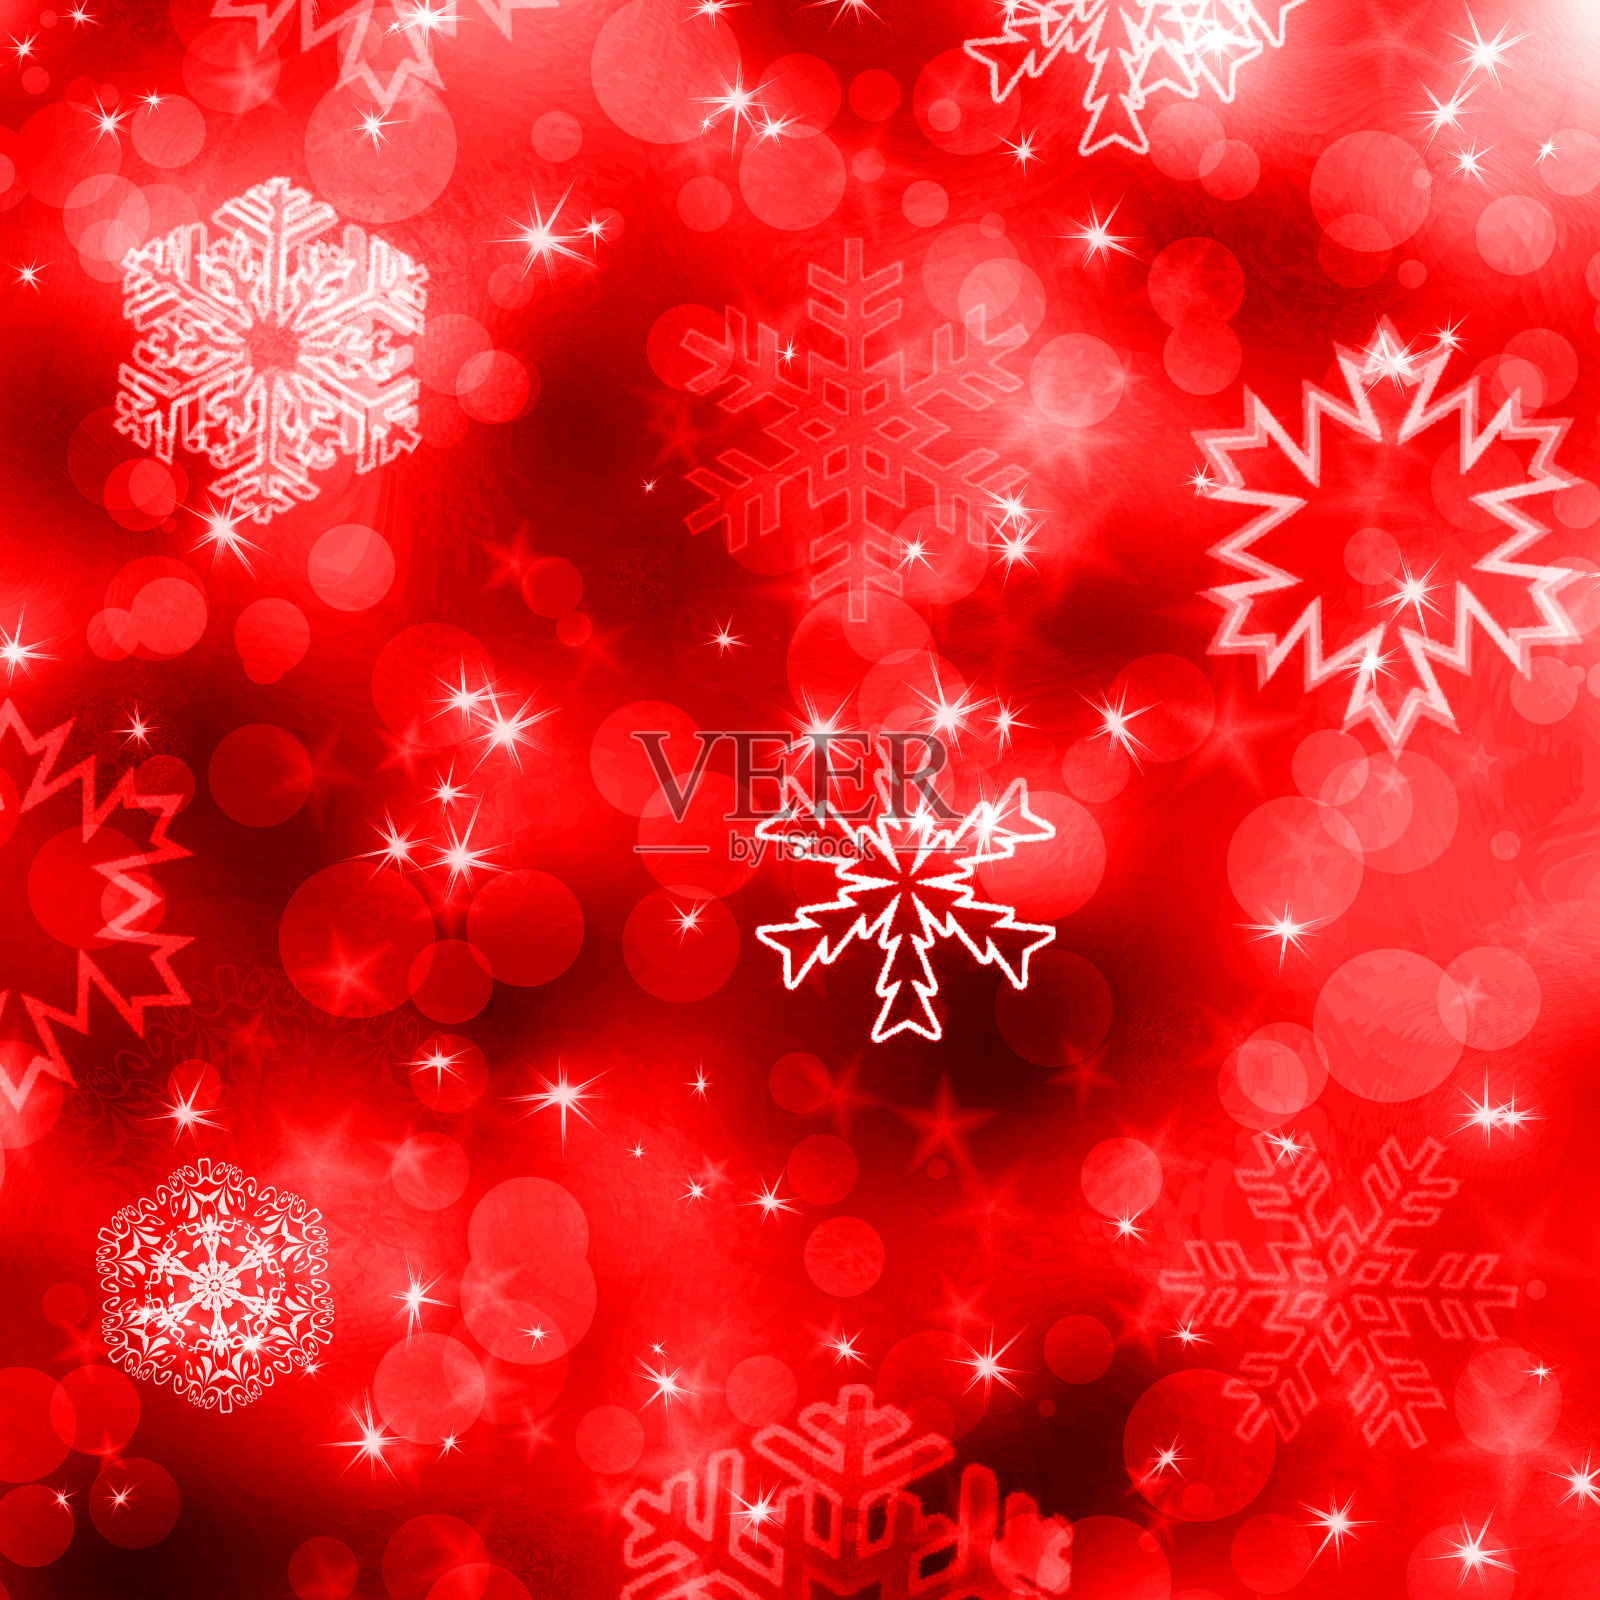 圣诞节的背景是白色的雪花和星星插画图片素材